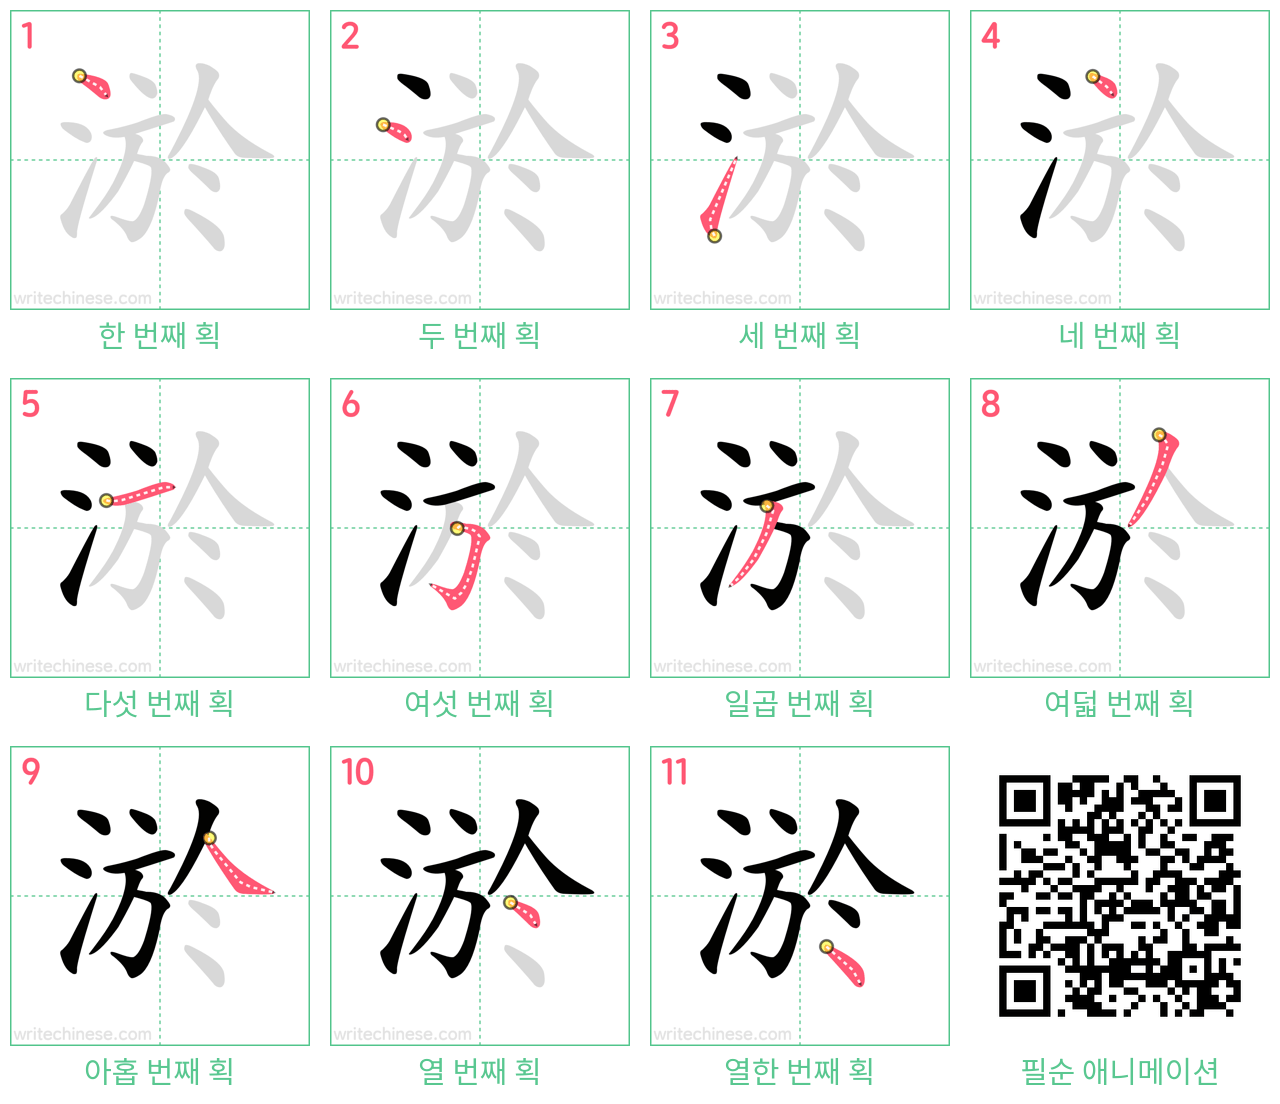 淤 step-by-step stroke order diagrams